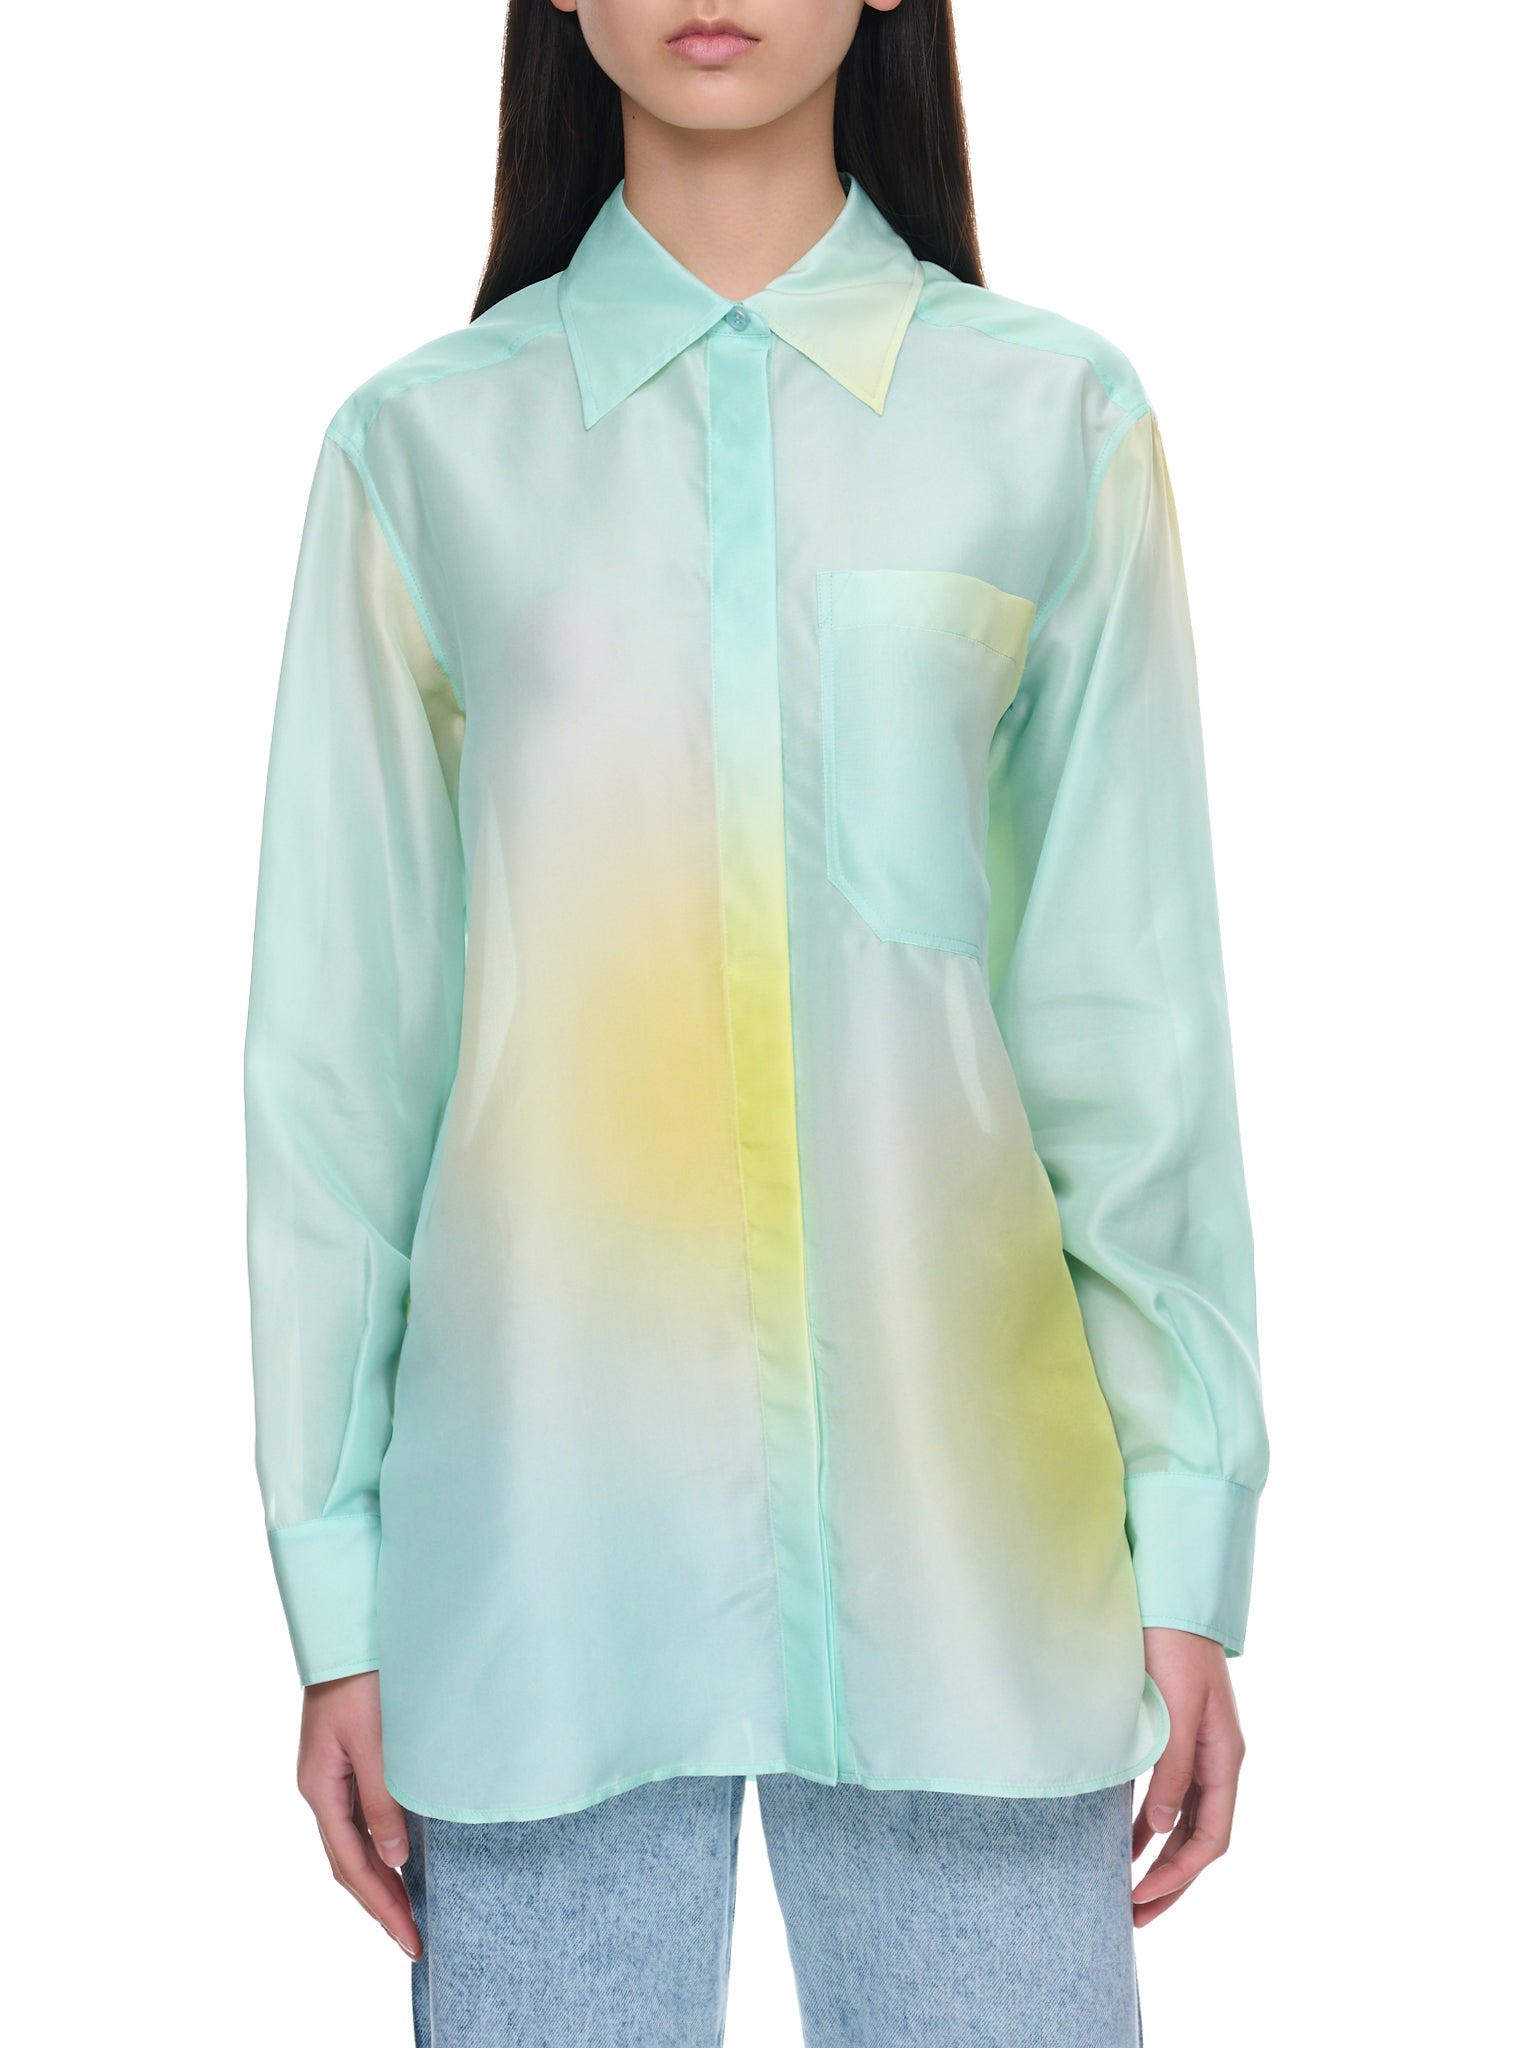 Tie-Dye Shirt (23PCTO024SE1378-BLUE-YELLOW-DO)